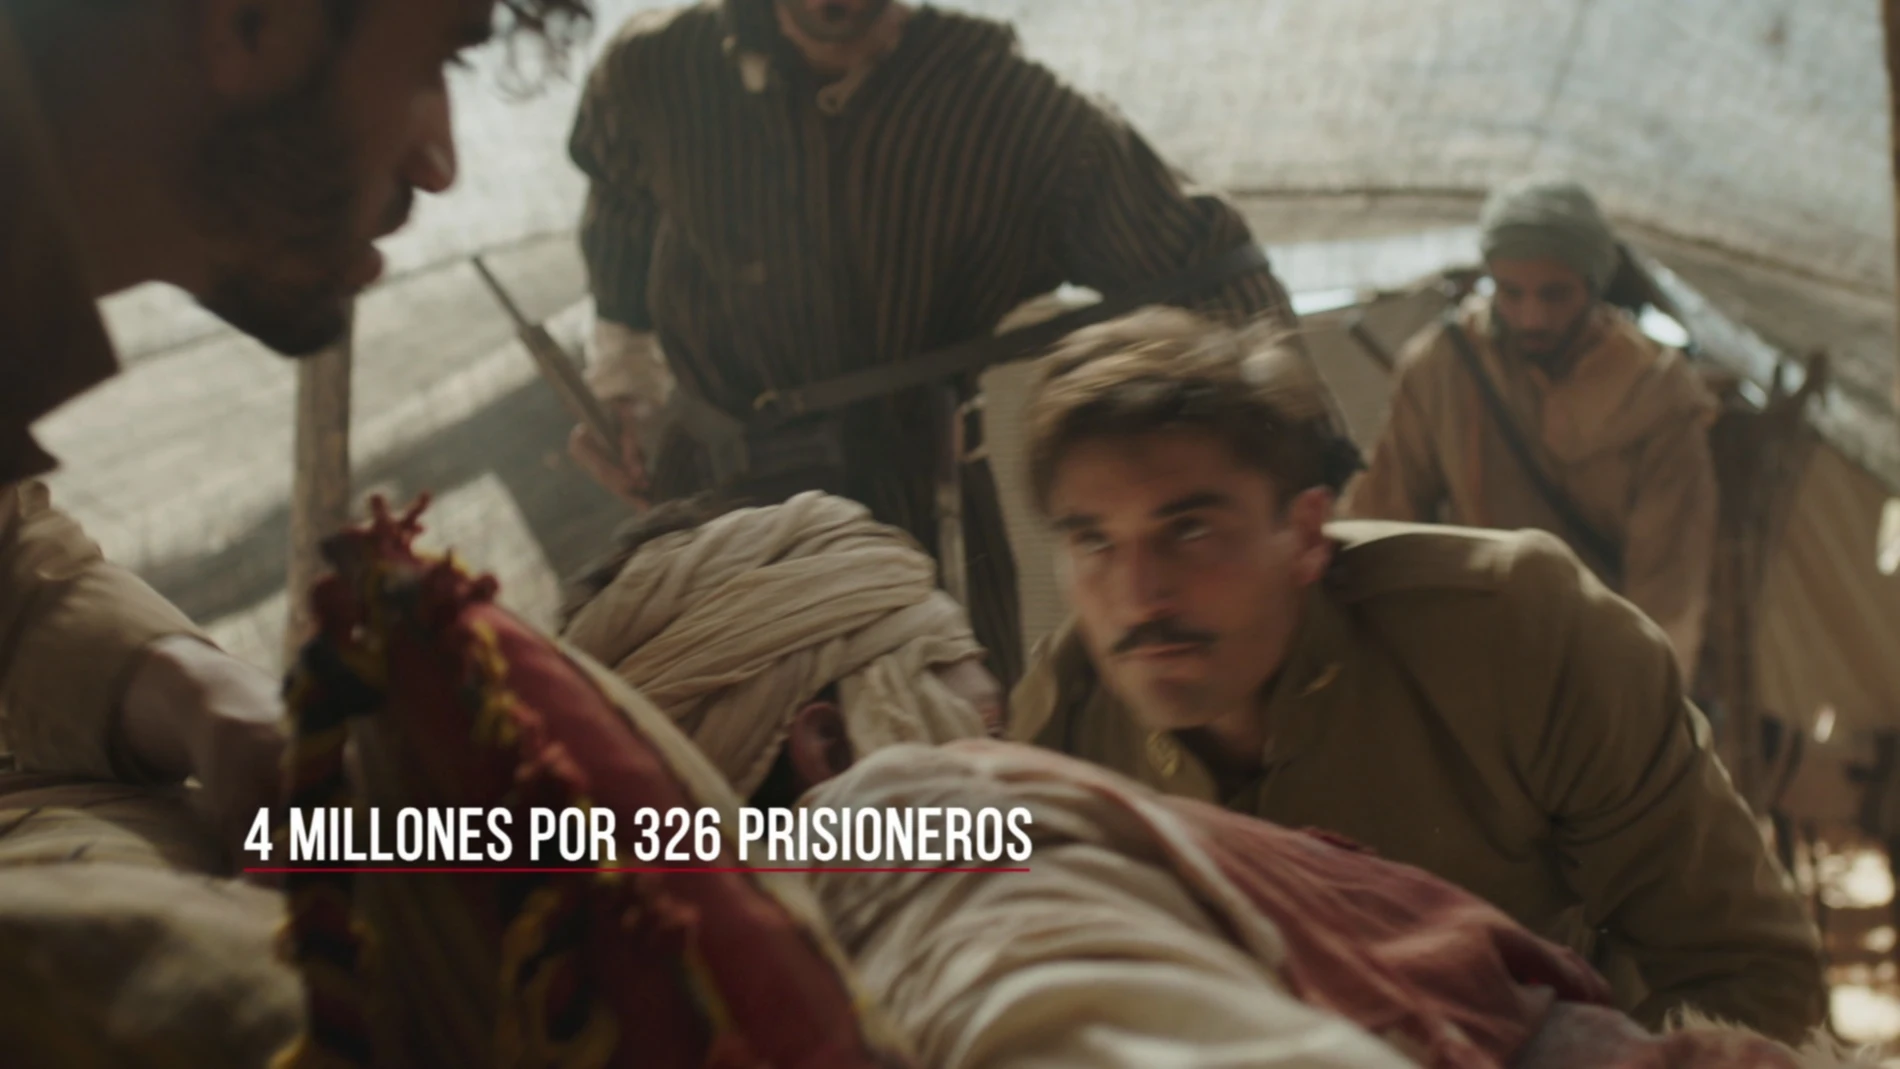  ¿Como eran tratados los prisioneros en el Rif?